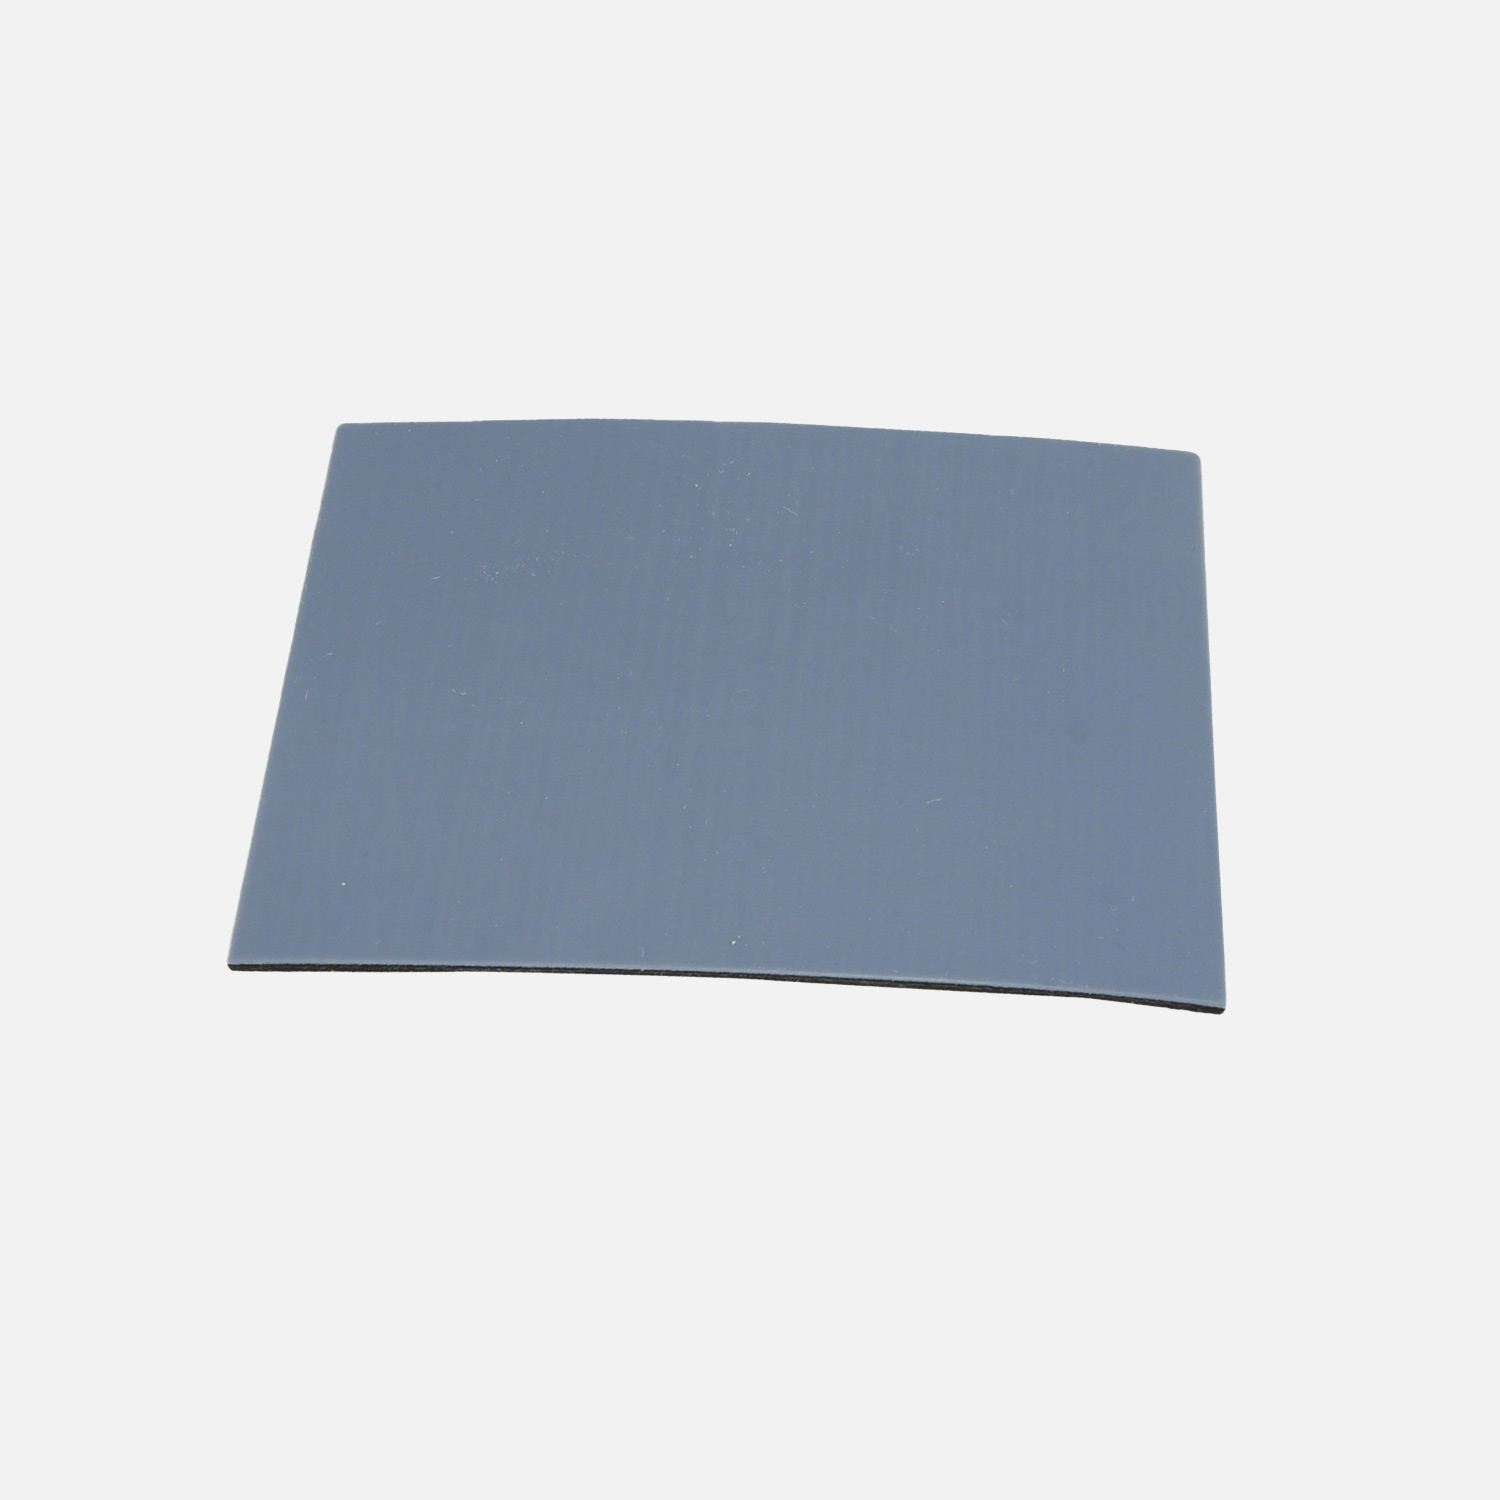 1 HSI Möbelgleiter 'Easy' - quadratisch selbstklebend flach - grau - 80x100mm